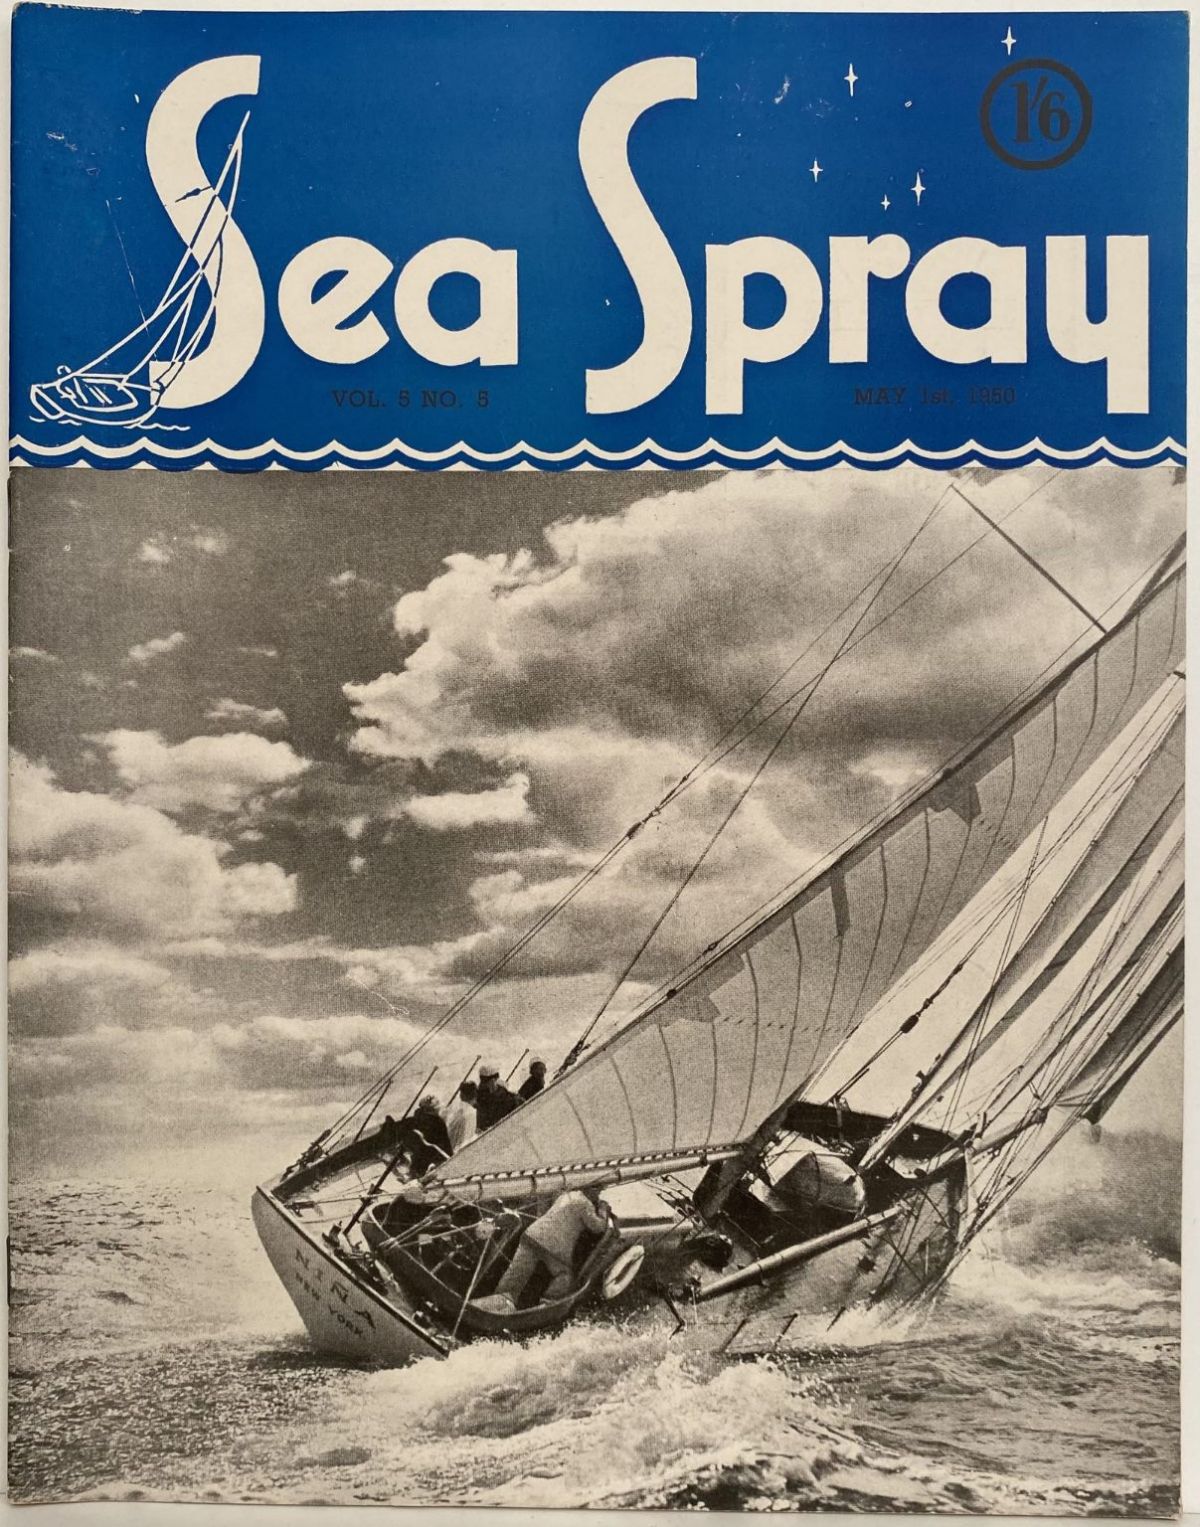 VINTAGE MAGAZINE: Sea Spray - Vol. 5, No. 5 - May 1950